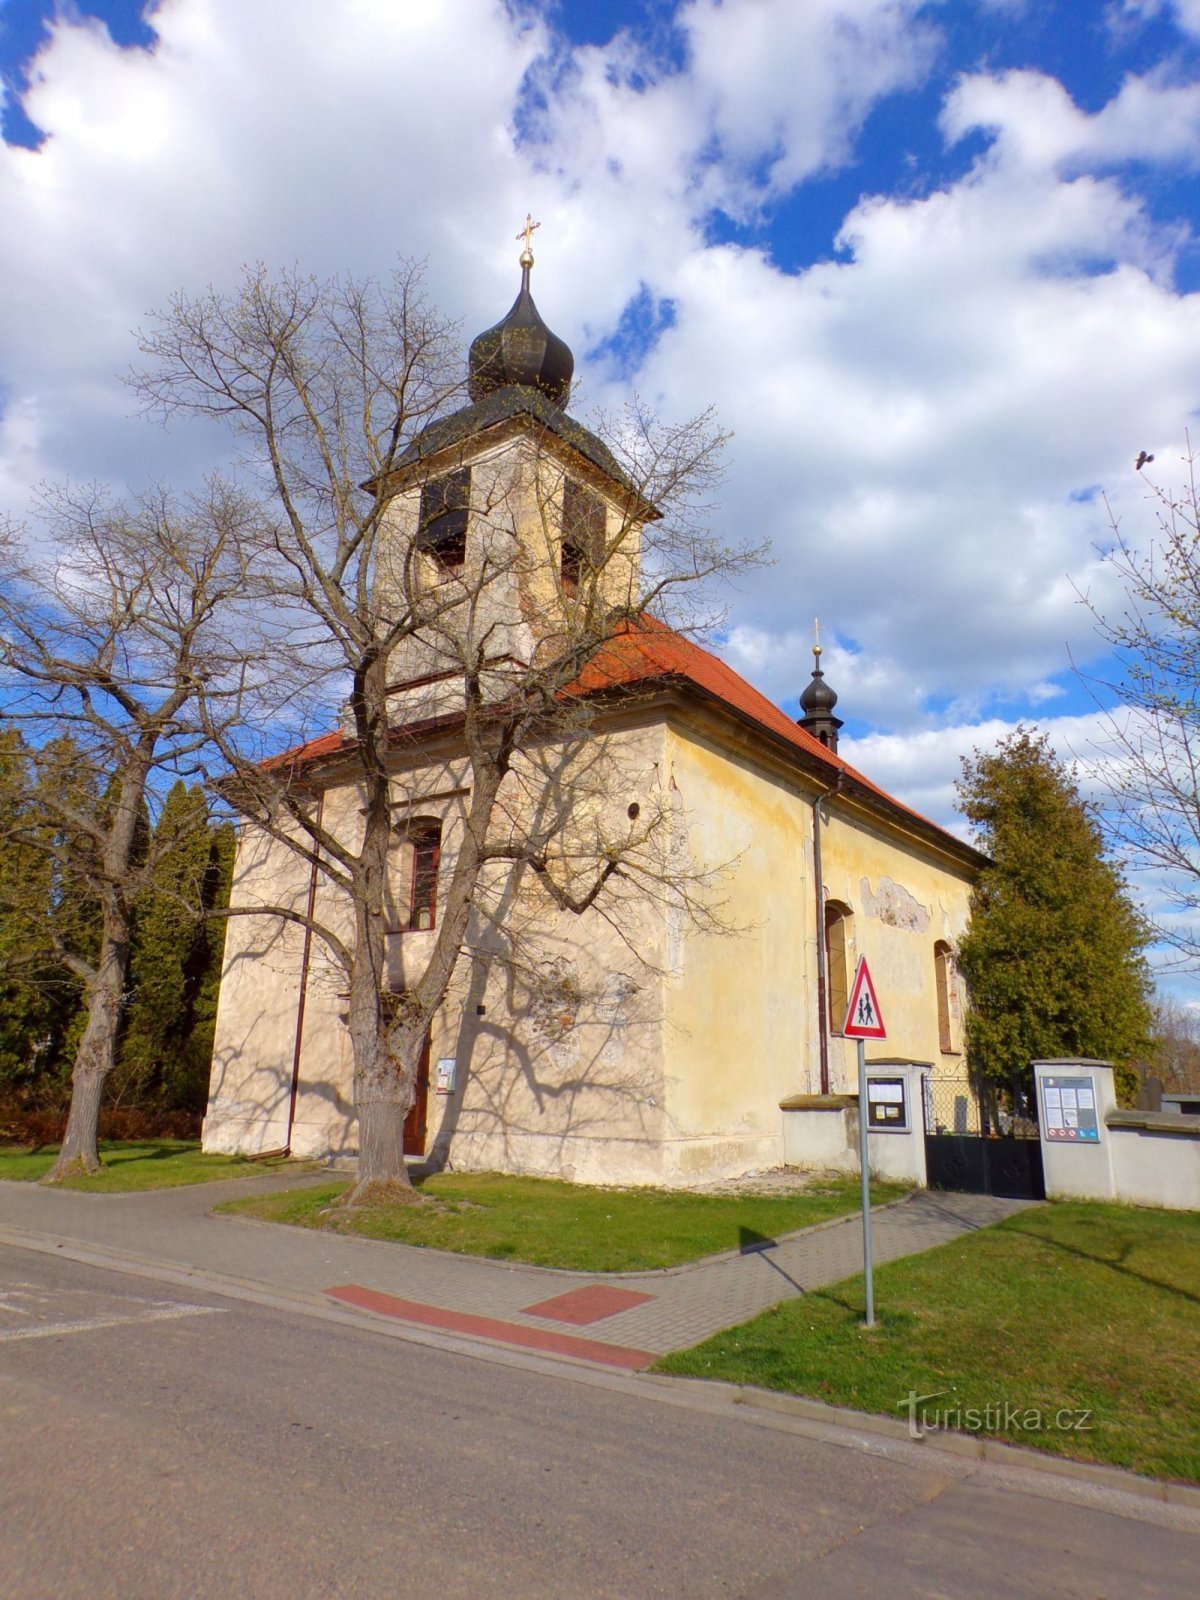 Церковь св. Иоанн Непомуцкий в Ланах на Дулке (Пардубице, 23.4.2022)